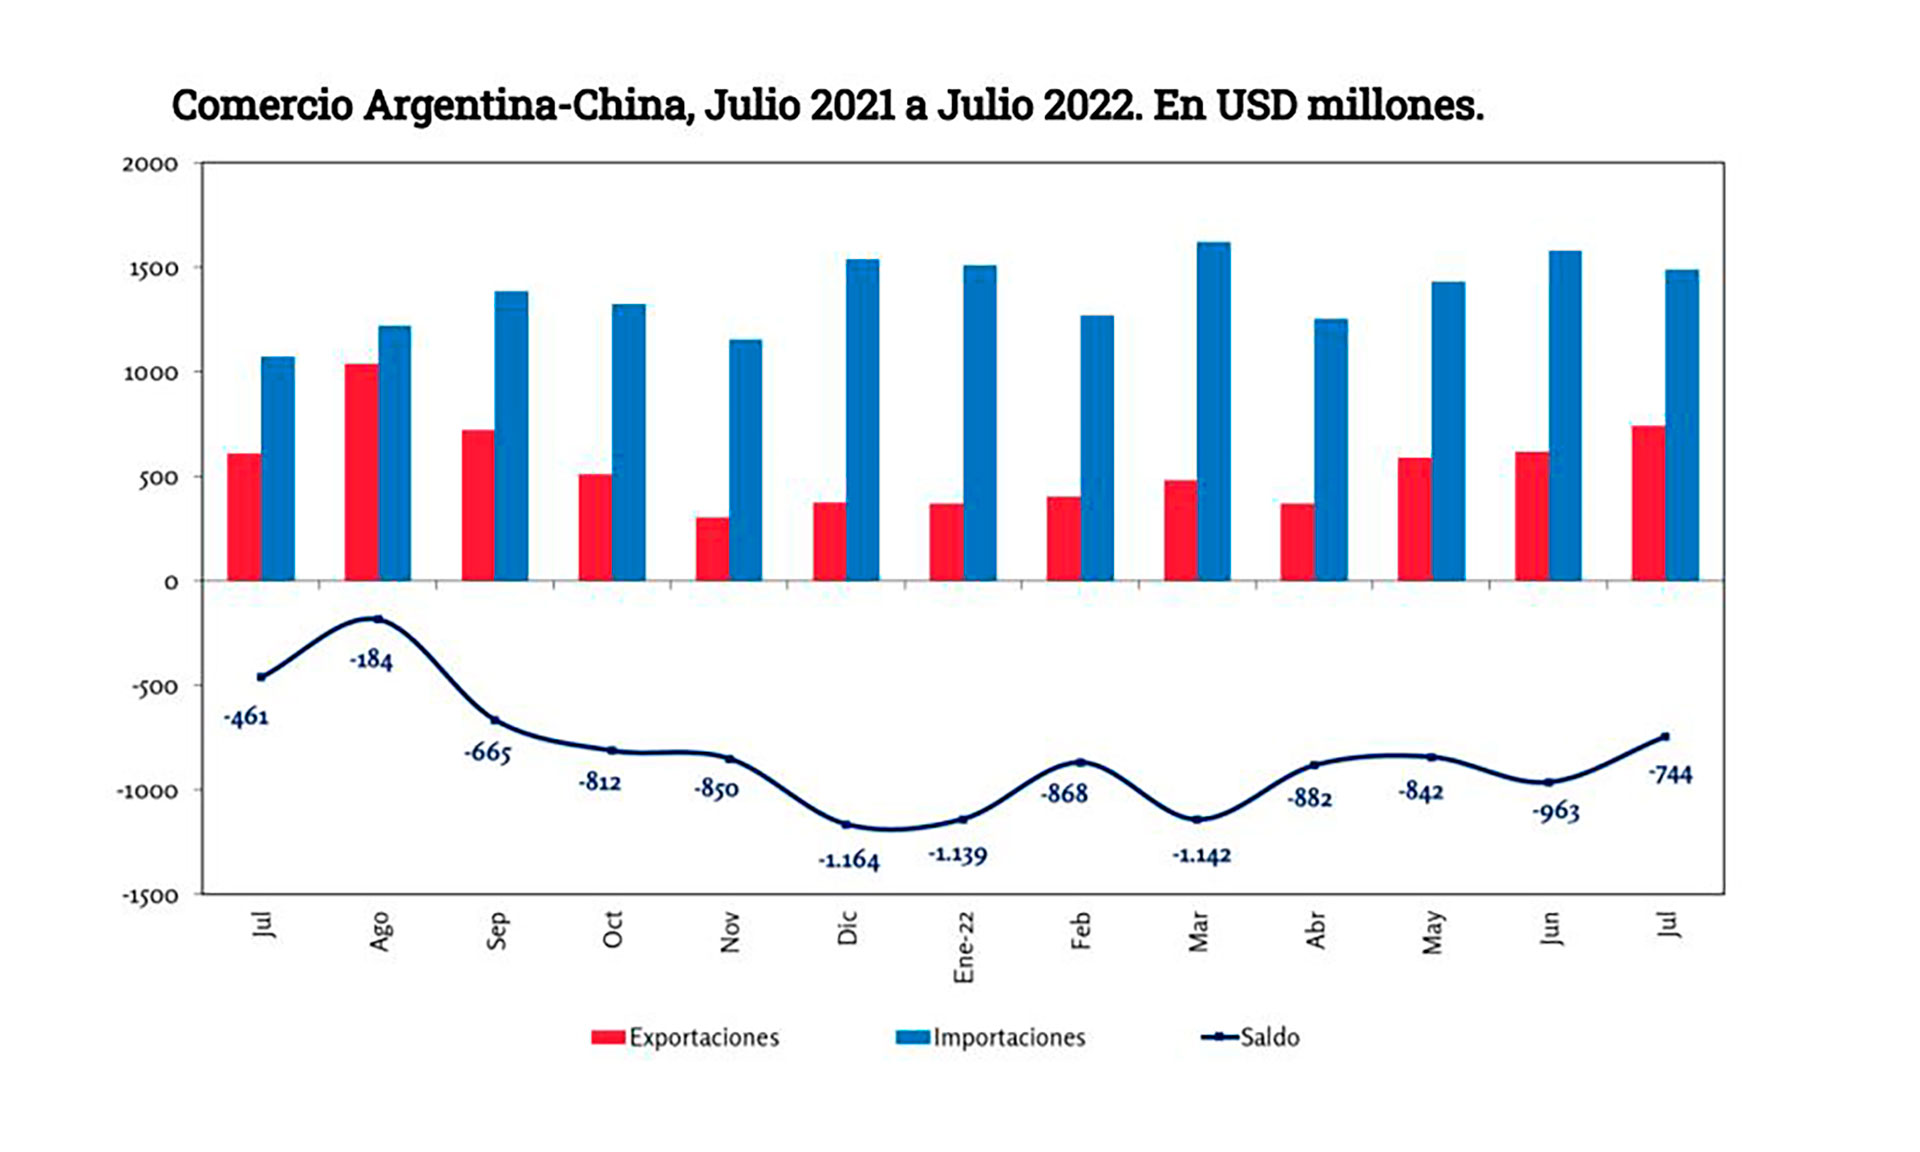 El gráfico permite observar que el déficit bilateral de la Argentina es sistemático y se ahondó en el últimos año 